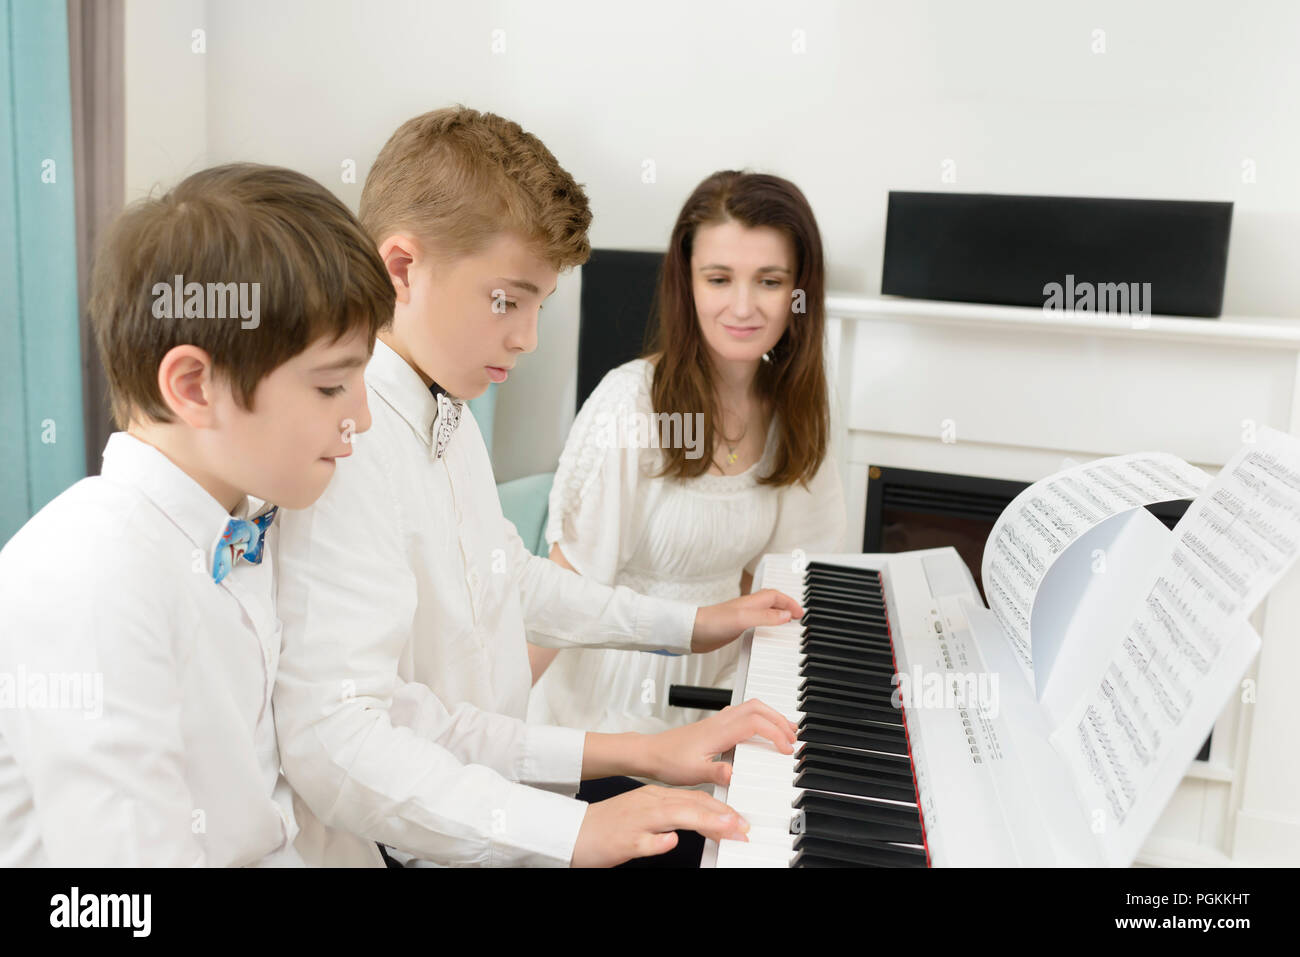 Kinder studieren an e-piano Instrument, spielen im Tandem, Lehrer neben Ihnen Stockfoto